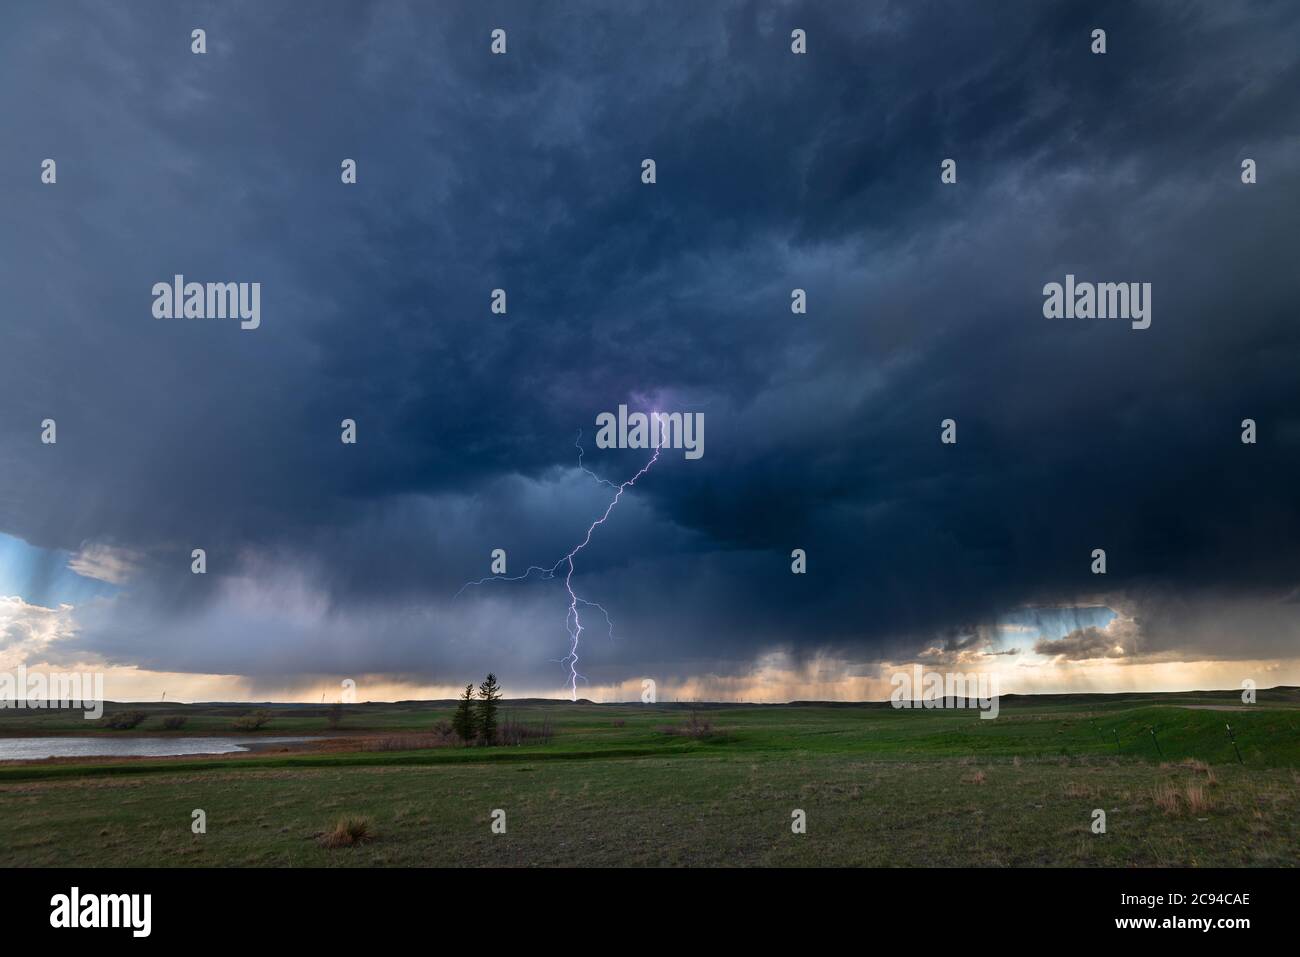 Ein Mesocyclone Wetter supercell, die eine Pre-Tornado-Bühne ist, passiert die Great Plains während strömende regen und knackende Blitz Highlight der ho Stockfoto